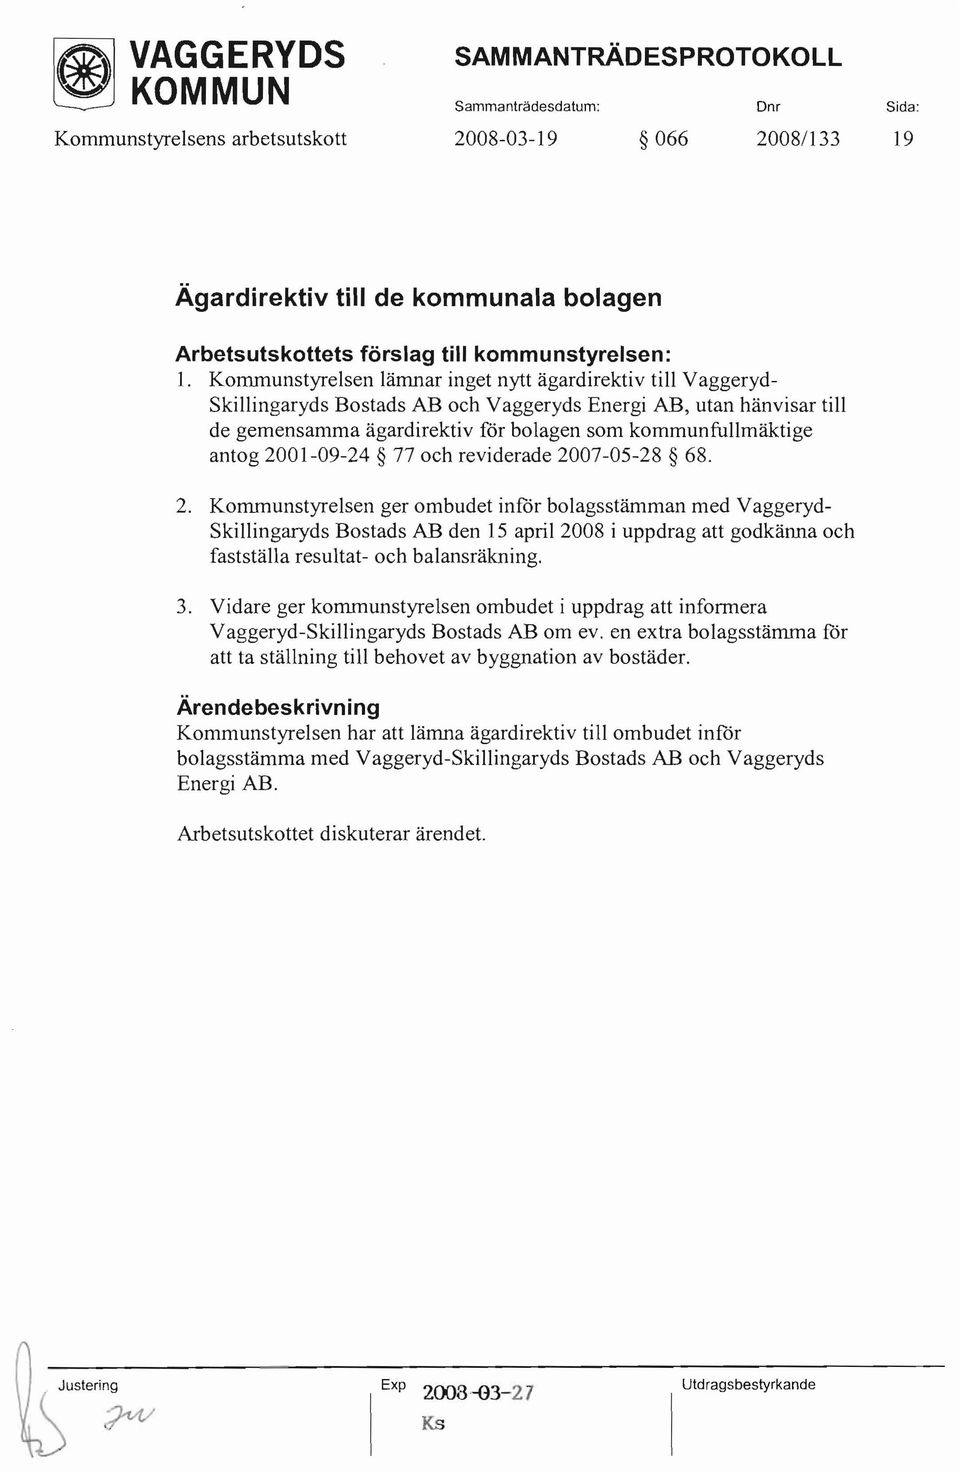 Kommunstyrelsen lämnar inget nytt ägardirektiv till Vaggeryd Skillingaryds Bostads AB och Vaggeryds Energi AB, utan hänvisar till de gemensamma ägardirektiv för bolagen som kommunfullmäktige antog